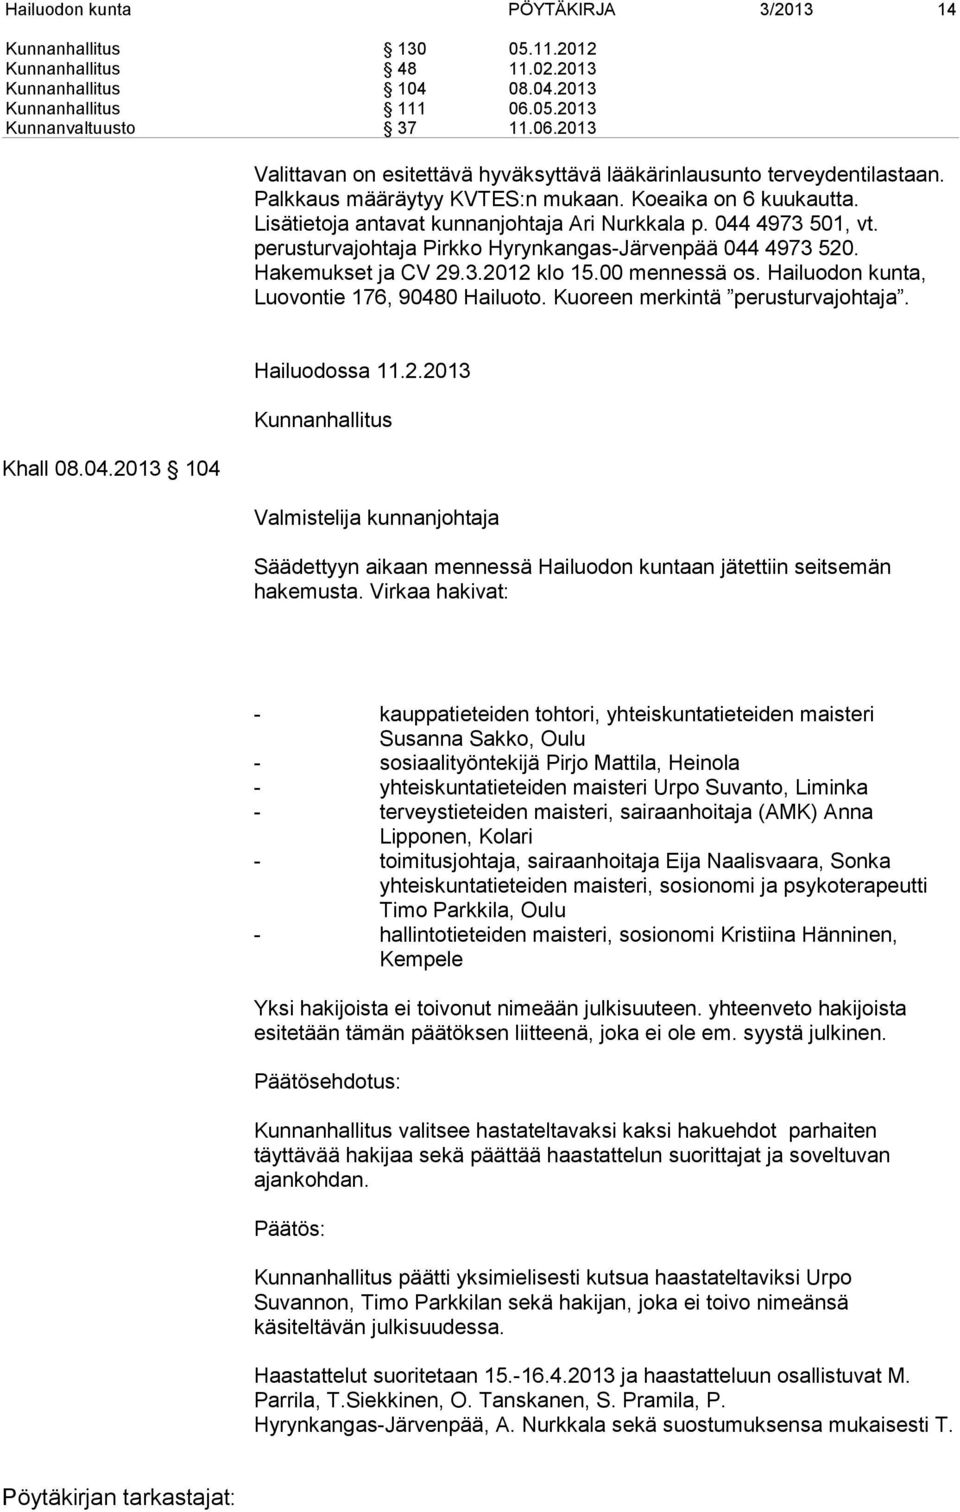 Lisätietoja antavat kunnanjohtaja Ari Nurkkala p. 044 4973 501, vt. perusturvajohtaja Pirkko Hyrynkangas-Järvenpää 044 4973 520. Hakemukset ja CV 29.3.2012 klo 15.00 mennessä os.